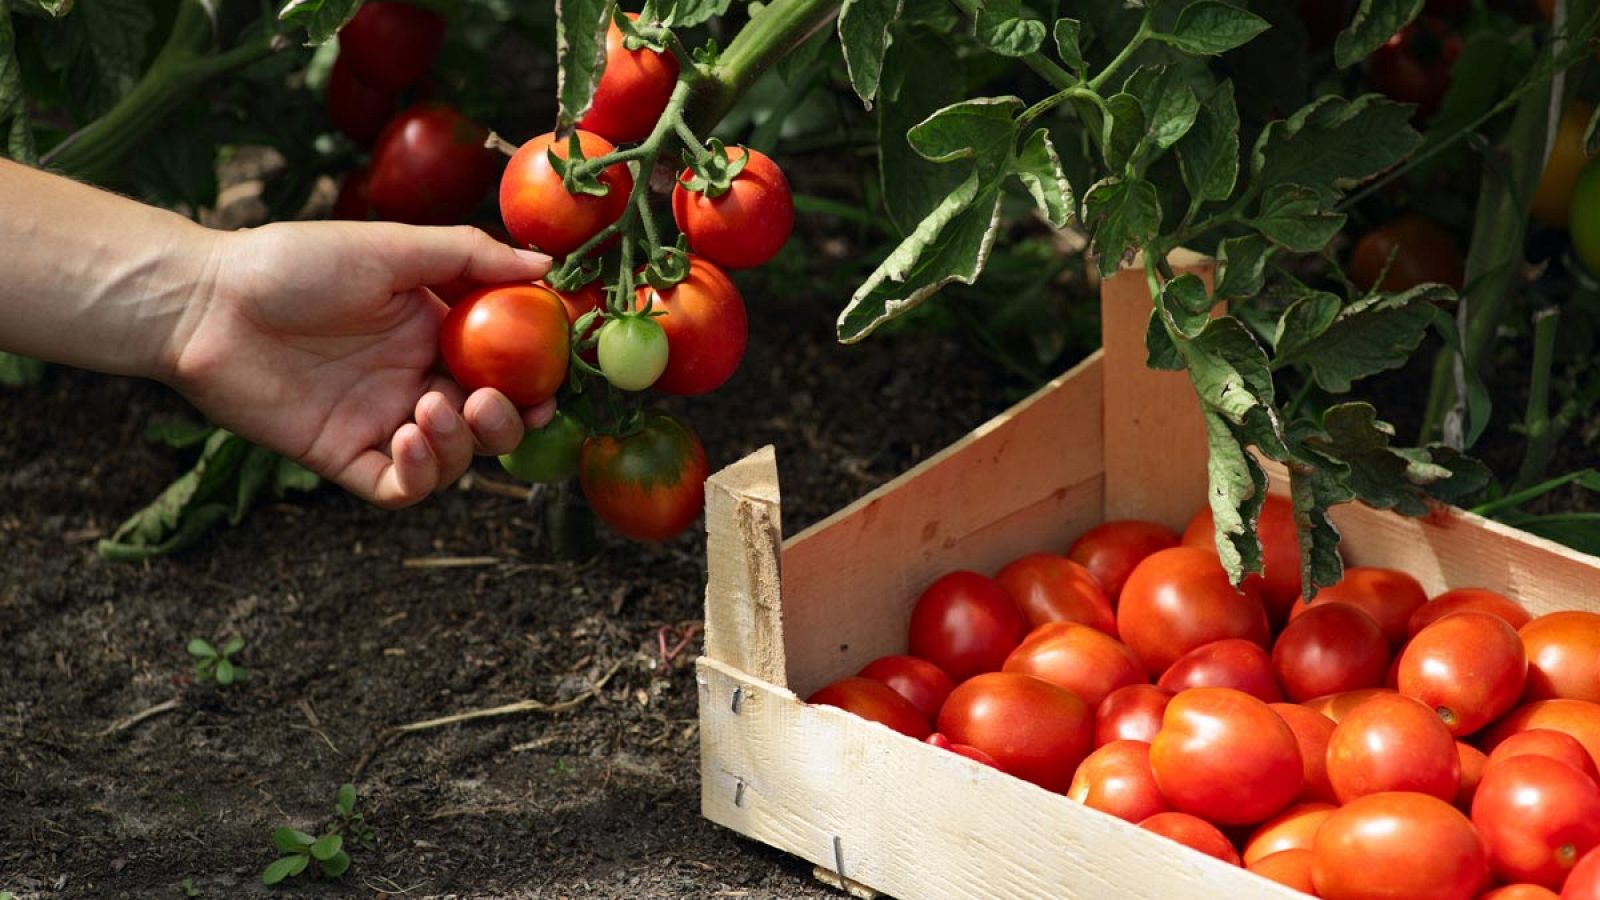 El extracto lipídico de tomate ha sido ampliamente estudiado debido a sus efectos beneficiosos en la salud humana.